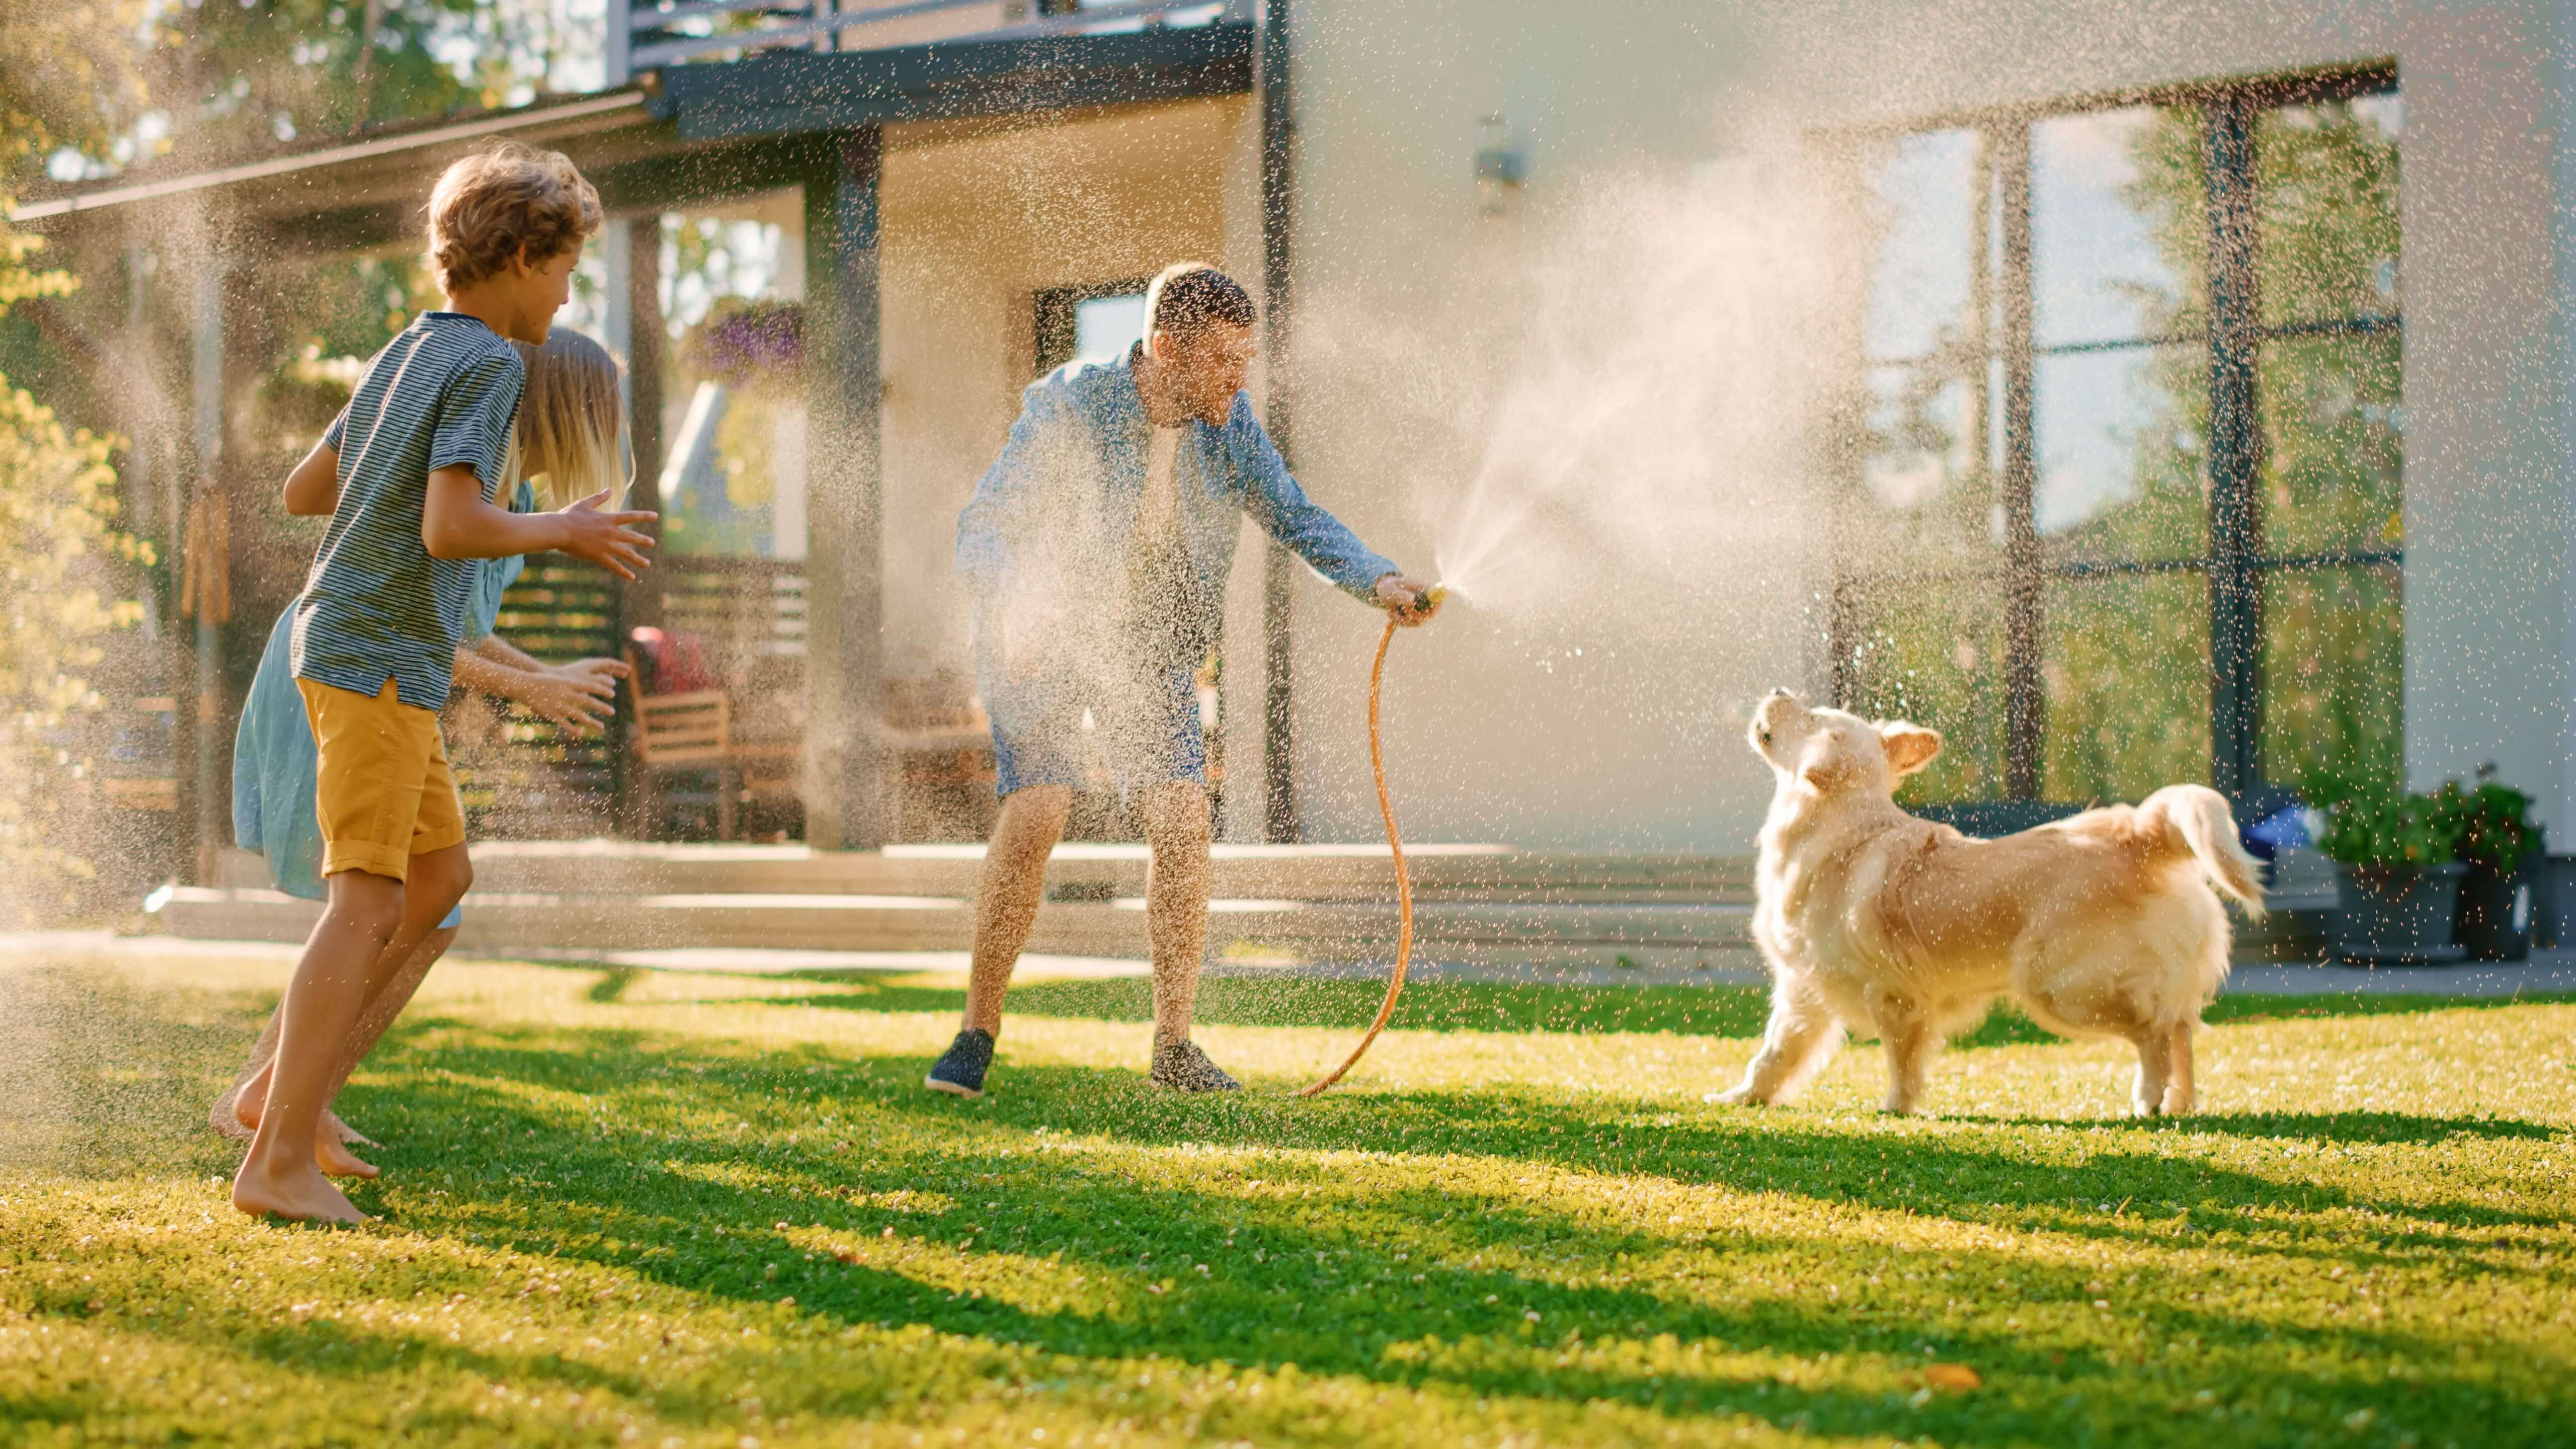 Een gezin speelt met de hond en de tuinslang op een groen grasveld voor een huis.